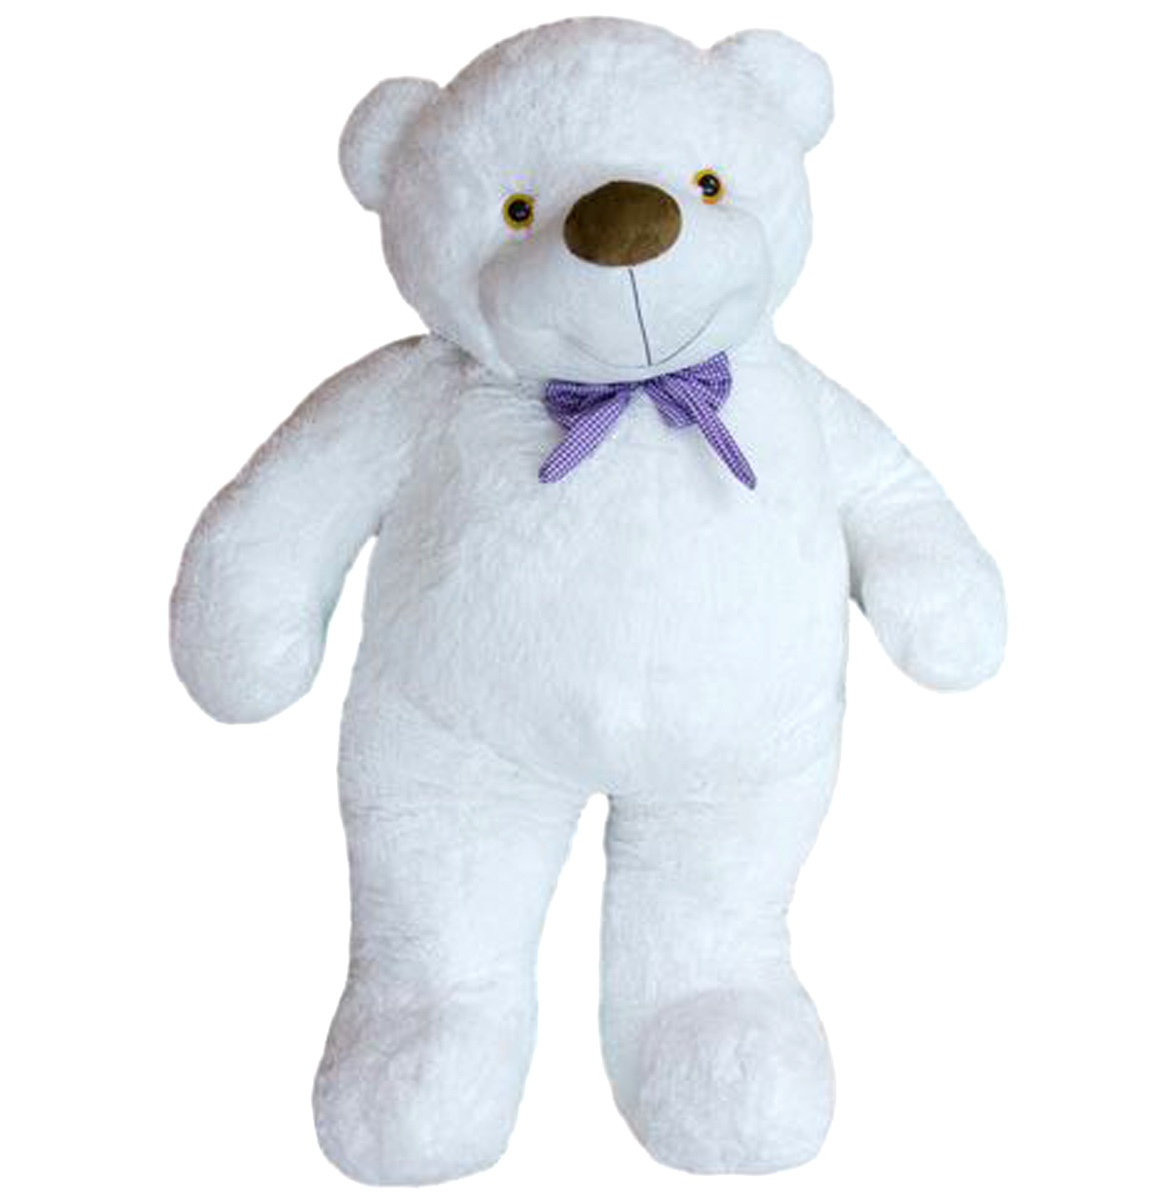 Мягкая игрушка медведь Бо белый 61 см